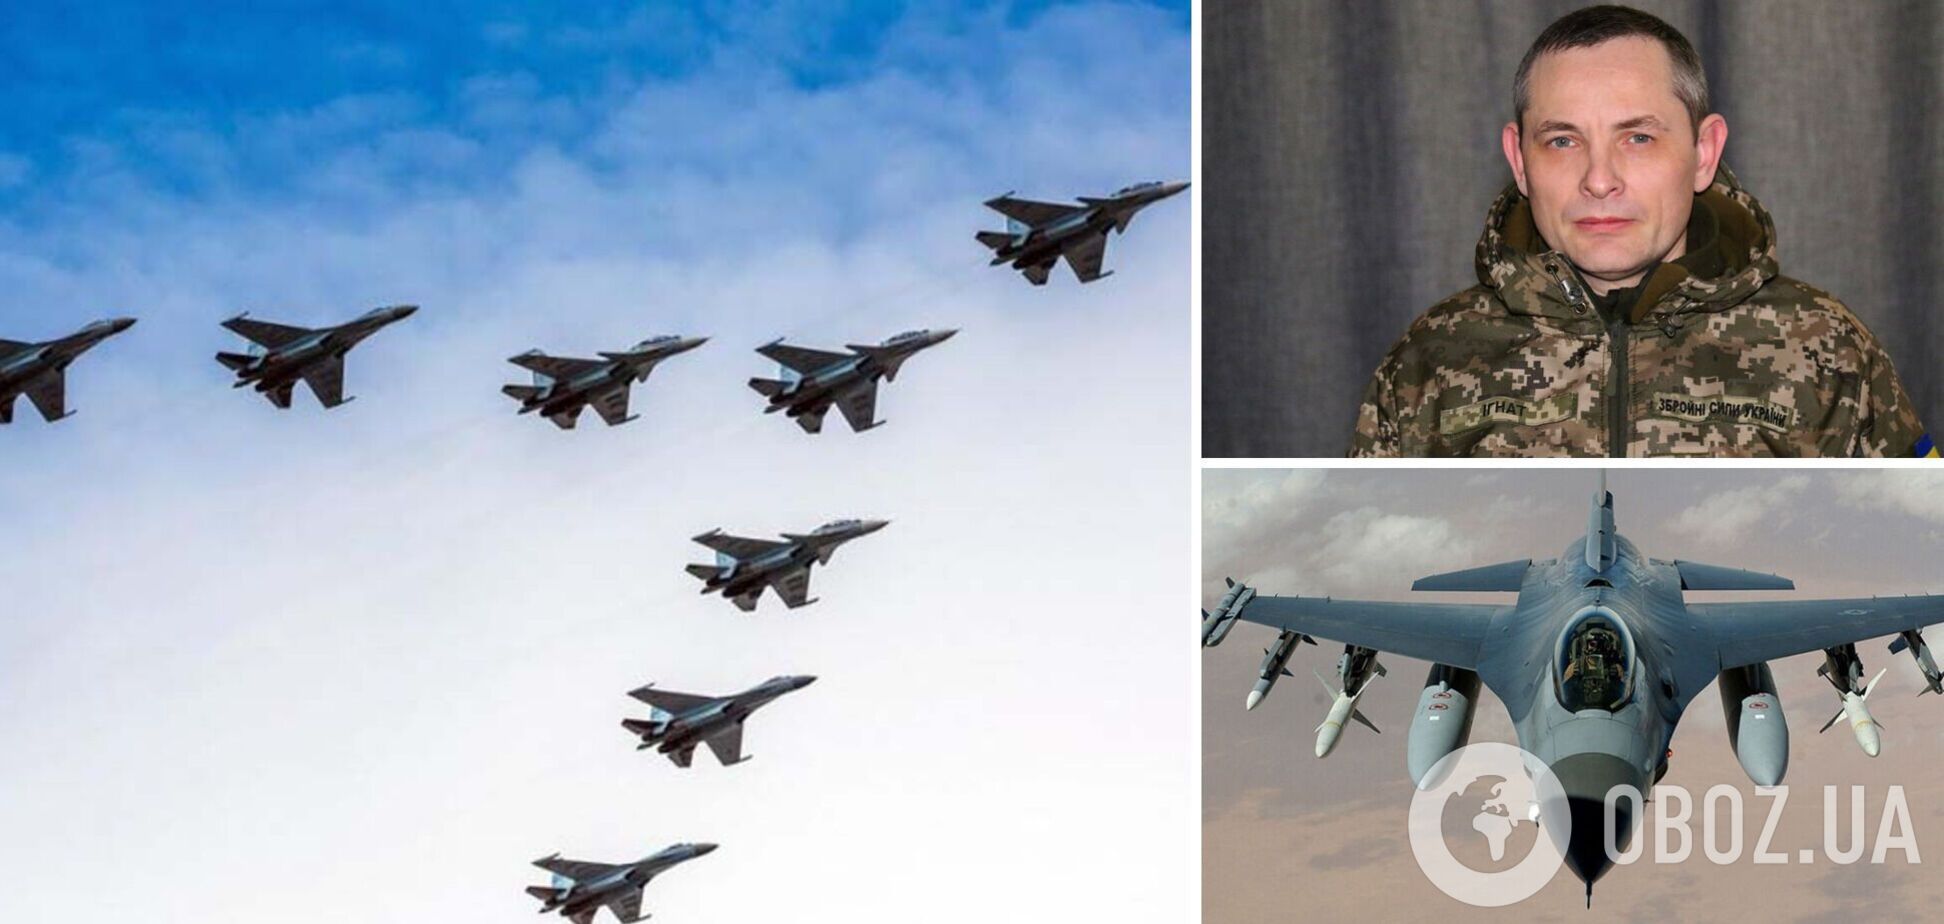 Процесс передачи истребителей сдвинулся с места, но Украине нужны современные самолеты, – спикер Воздушных сил